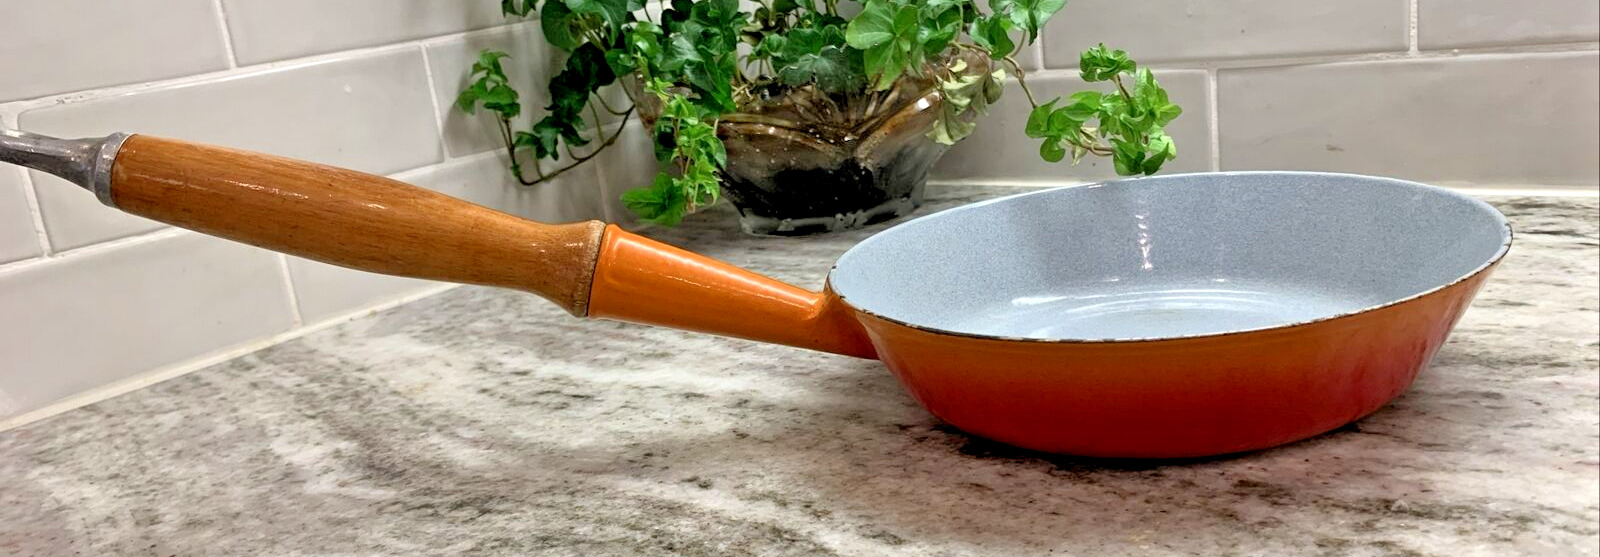 Vintage Le Creuset #20 Fry Pan Flame Orange Cast Iron Enamel 8”